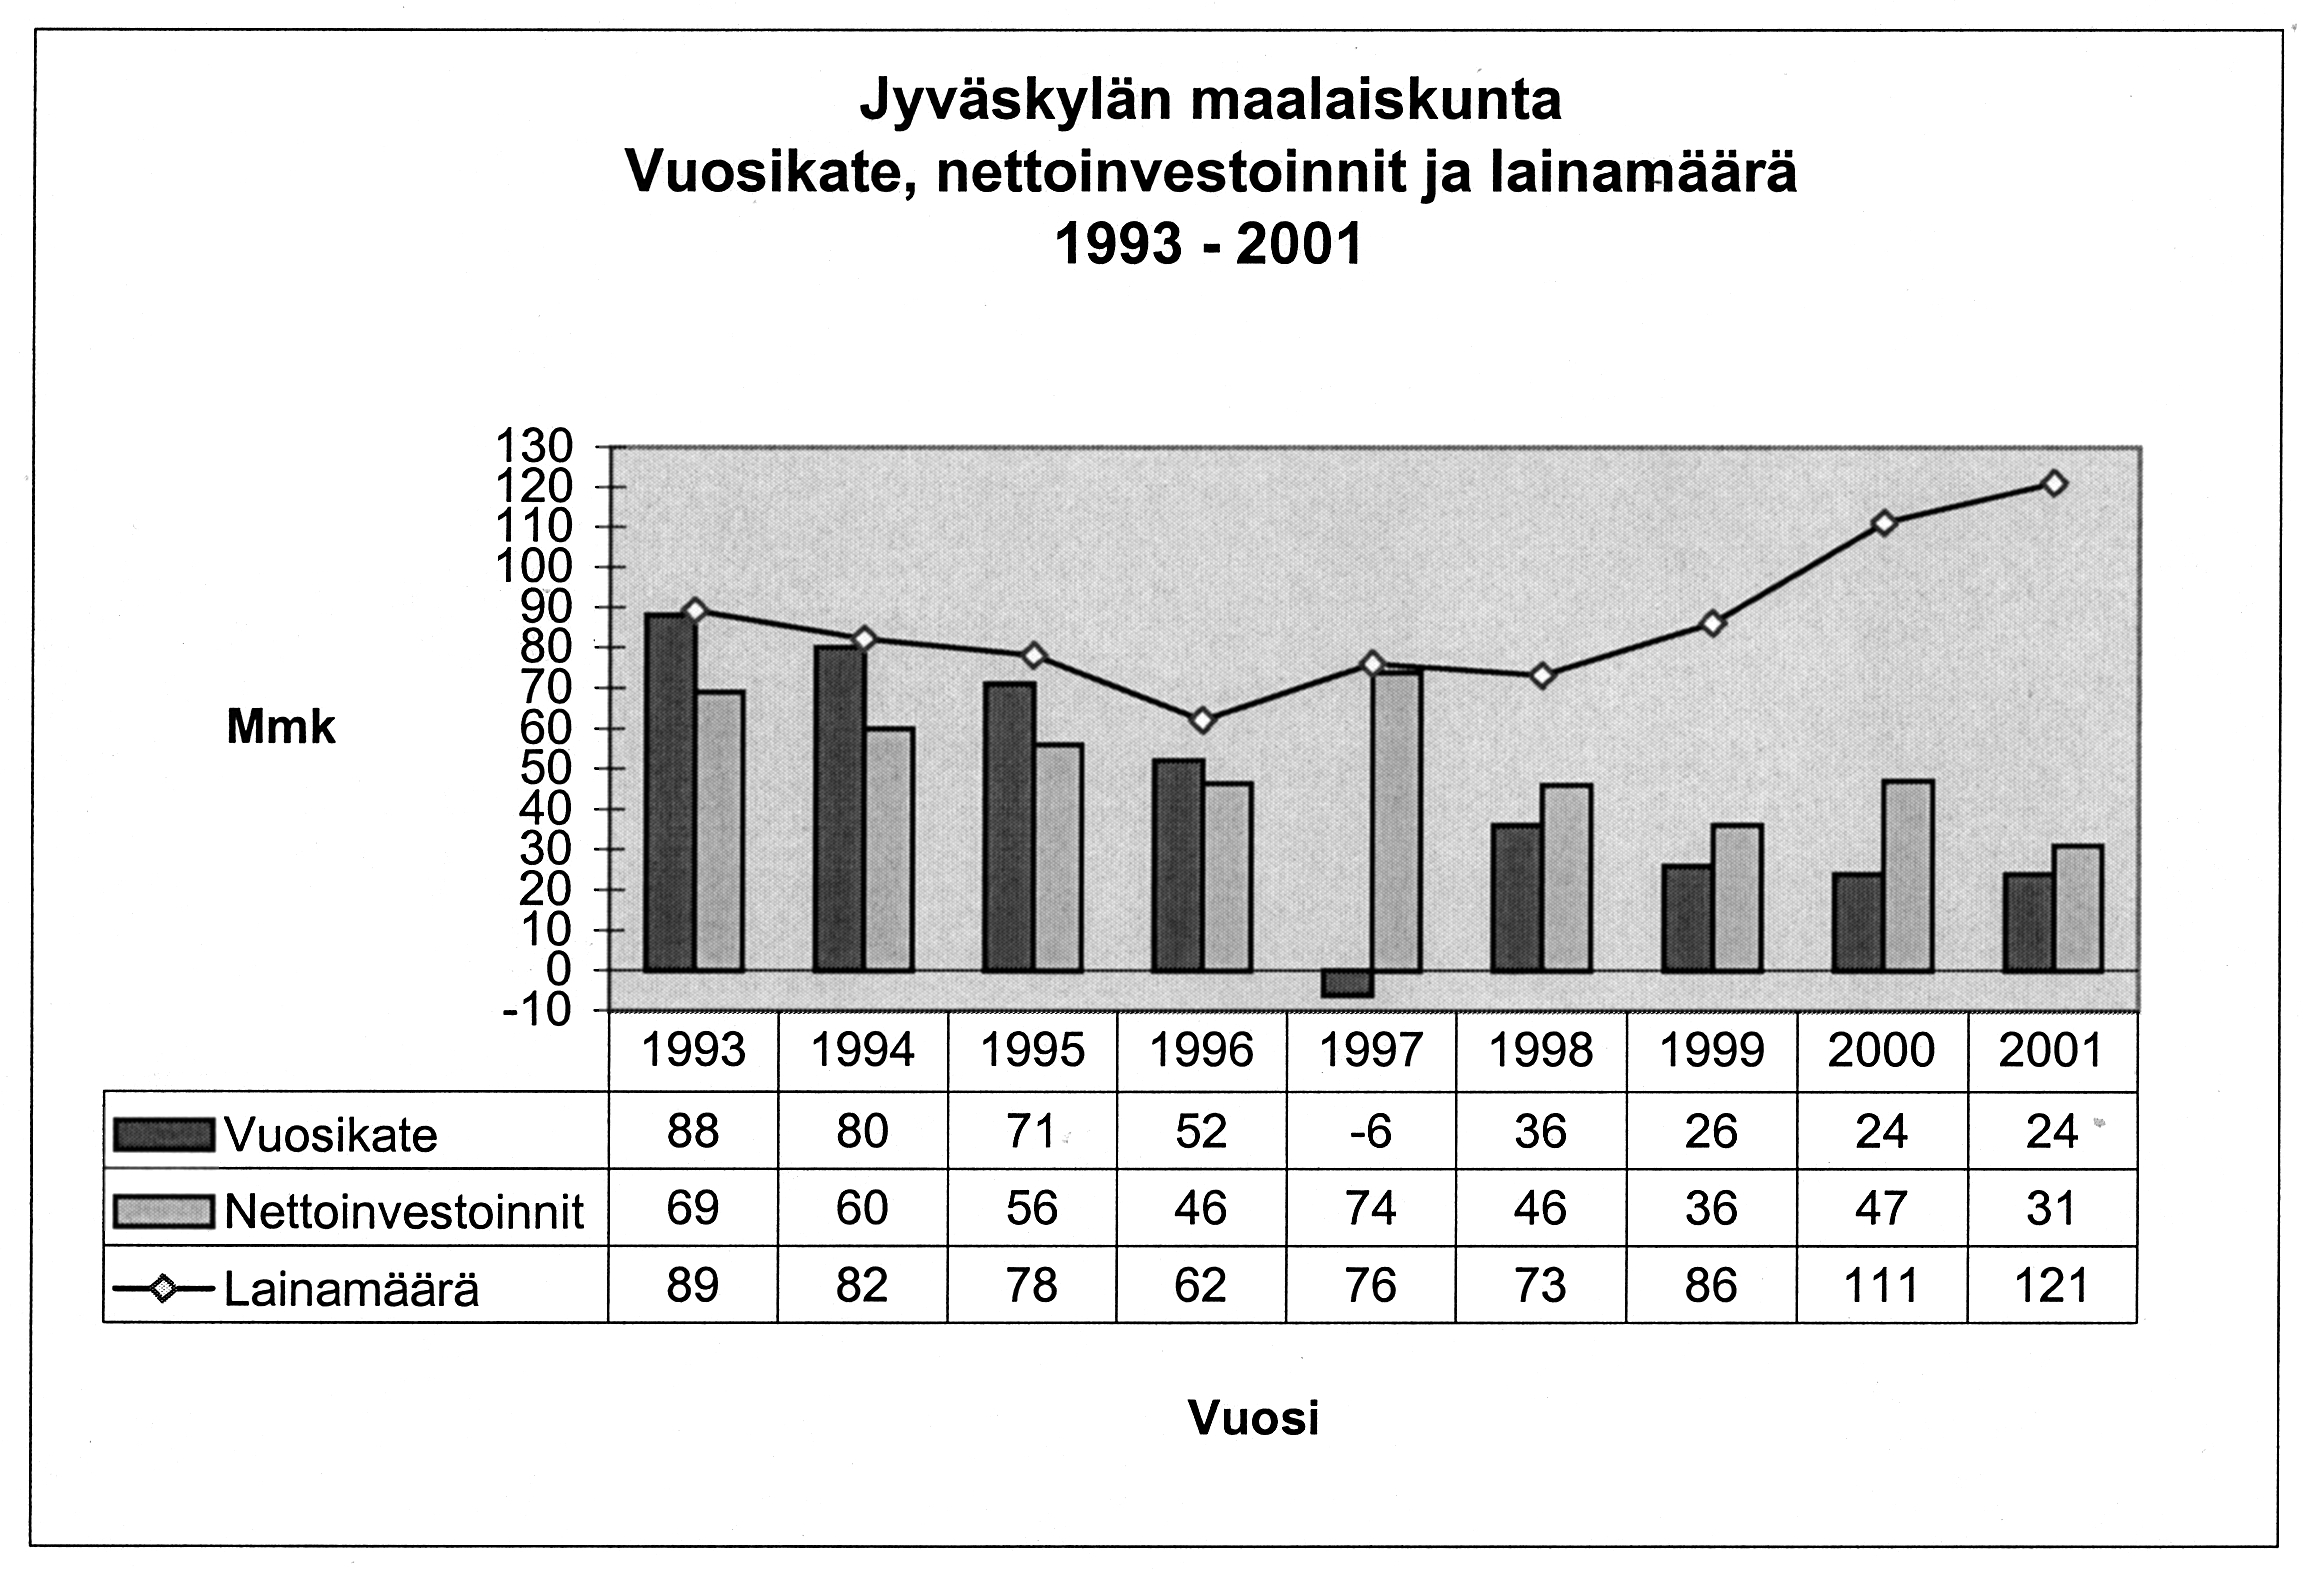 LIITE 6b Kuopion kaupungin rahoituslaskelma 1997 ja 1998 1997 1998 Mmk Mmk Tulorahoitus Vuosikate 74,3 101,3 Kuluksi kirjatut arvostuserät 19,8 Satunnaiset erät, netto 2,3 13,0 Rahoituseriin kirjattu